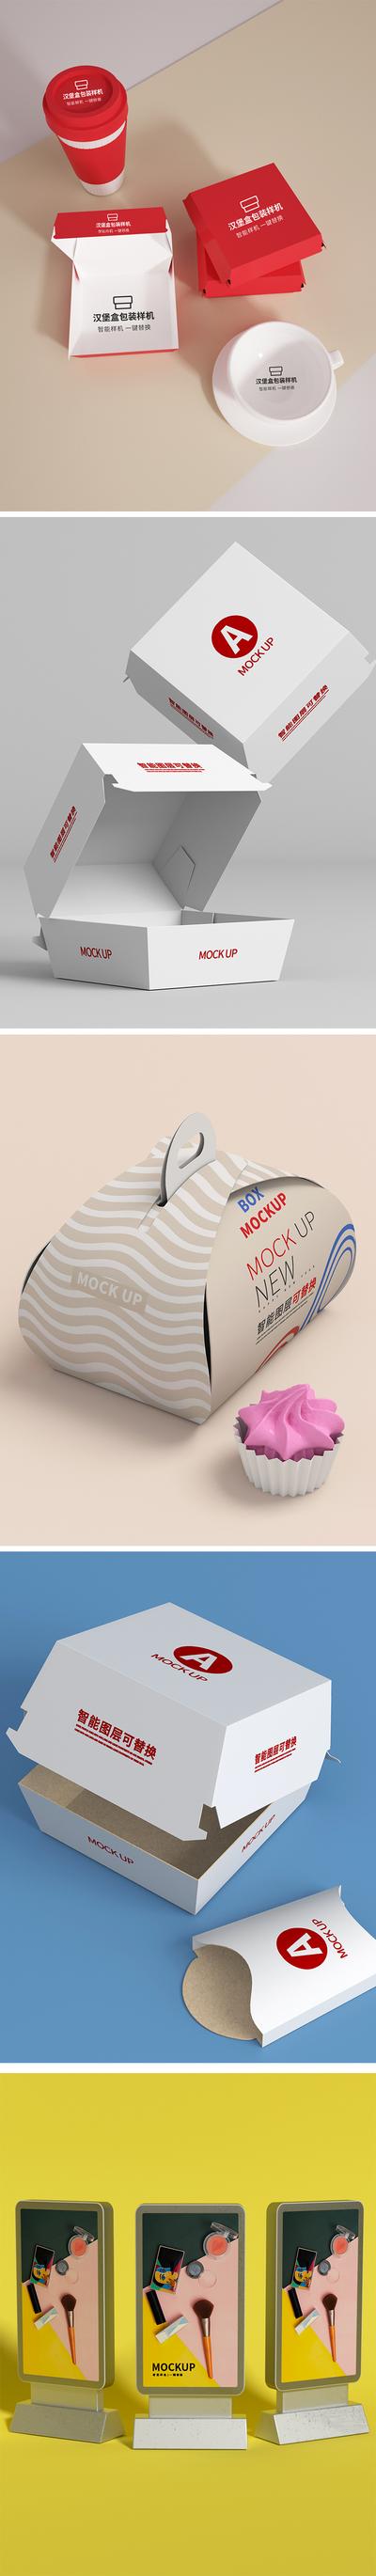 南门网 VI设计 包装设计 样机 大气 时尚 简约  汉堡盒子 甜品盒子